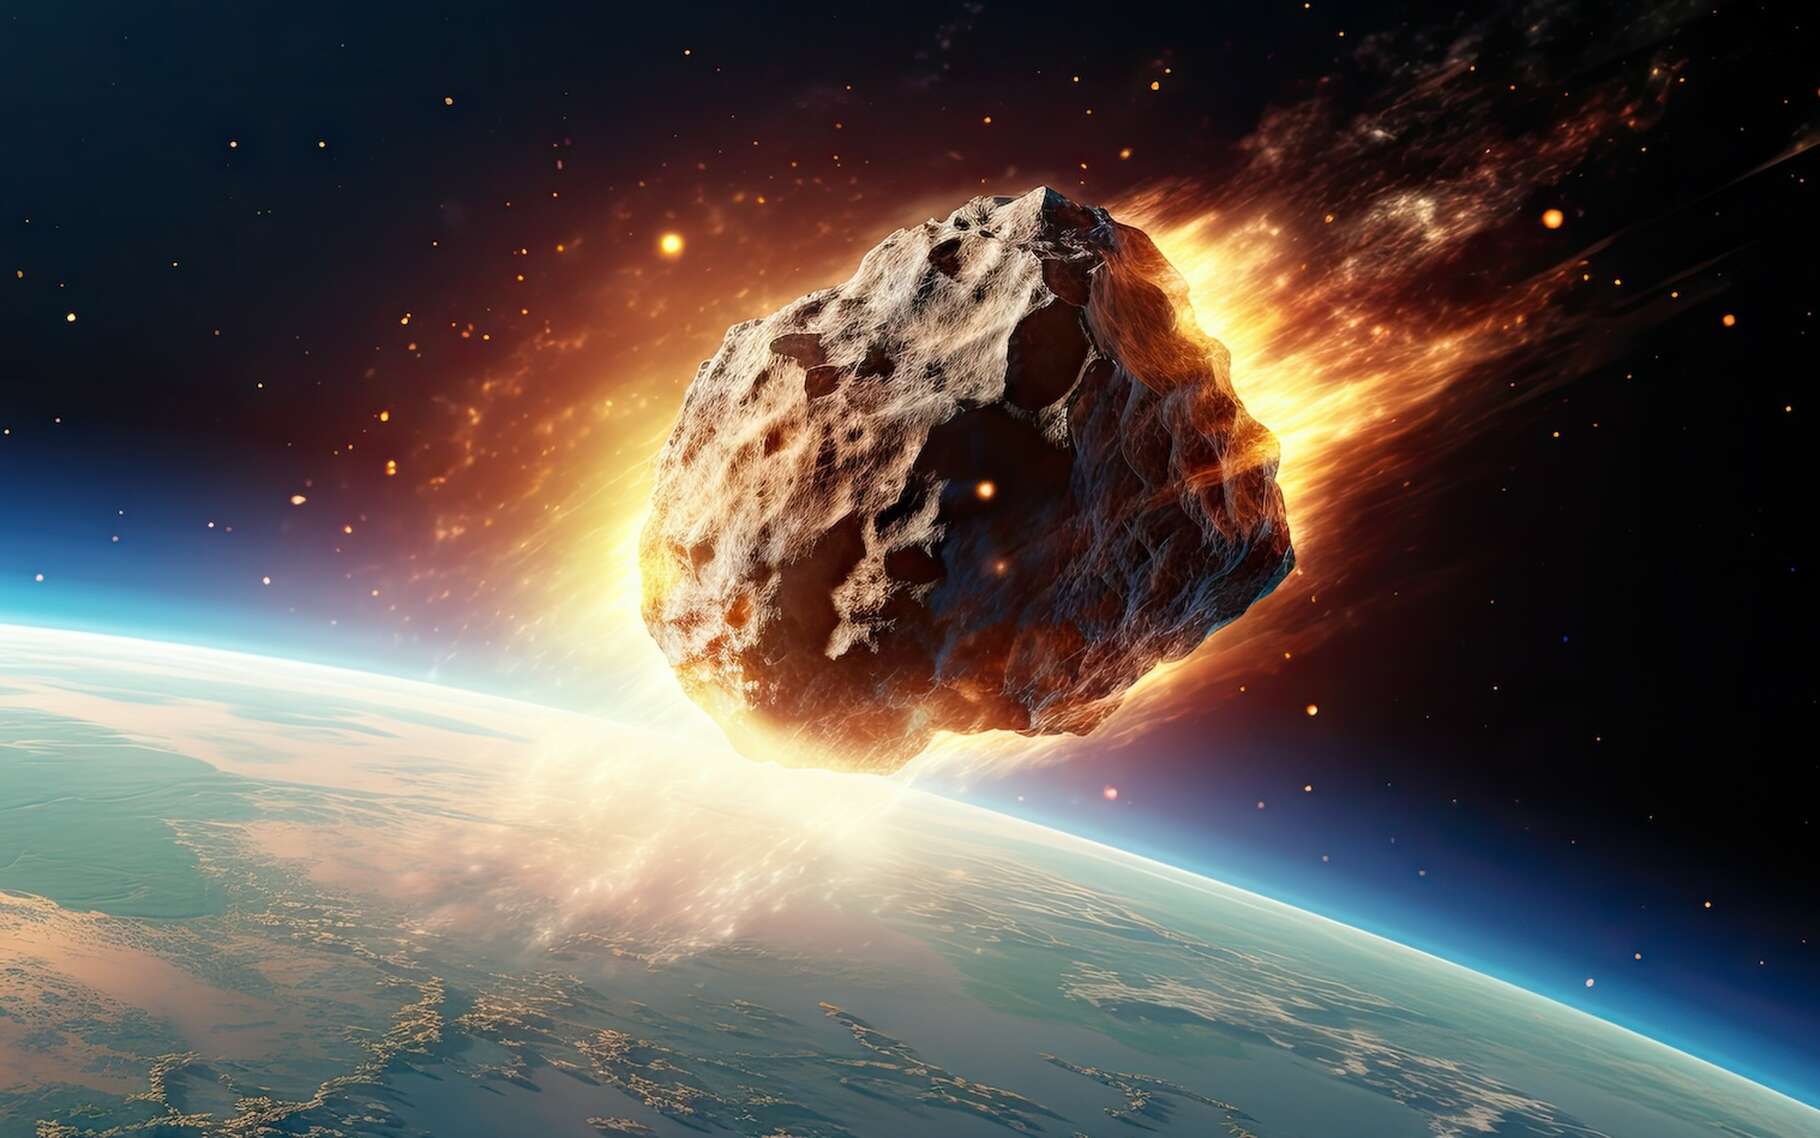 Spectacle dans le ciel de l'Allemagne : une météorite s'est désintégrée quelques heures après sa détection